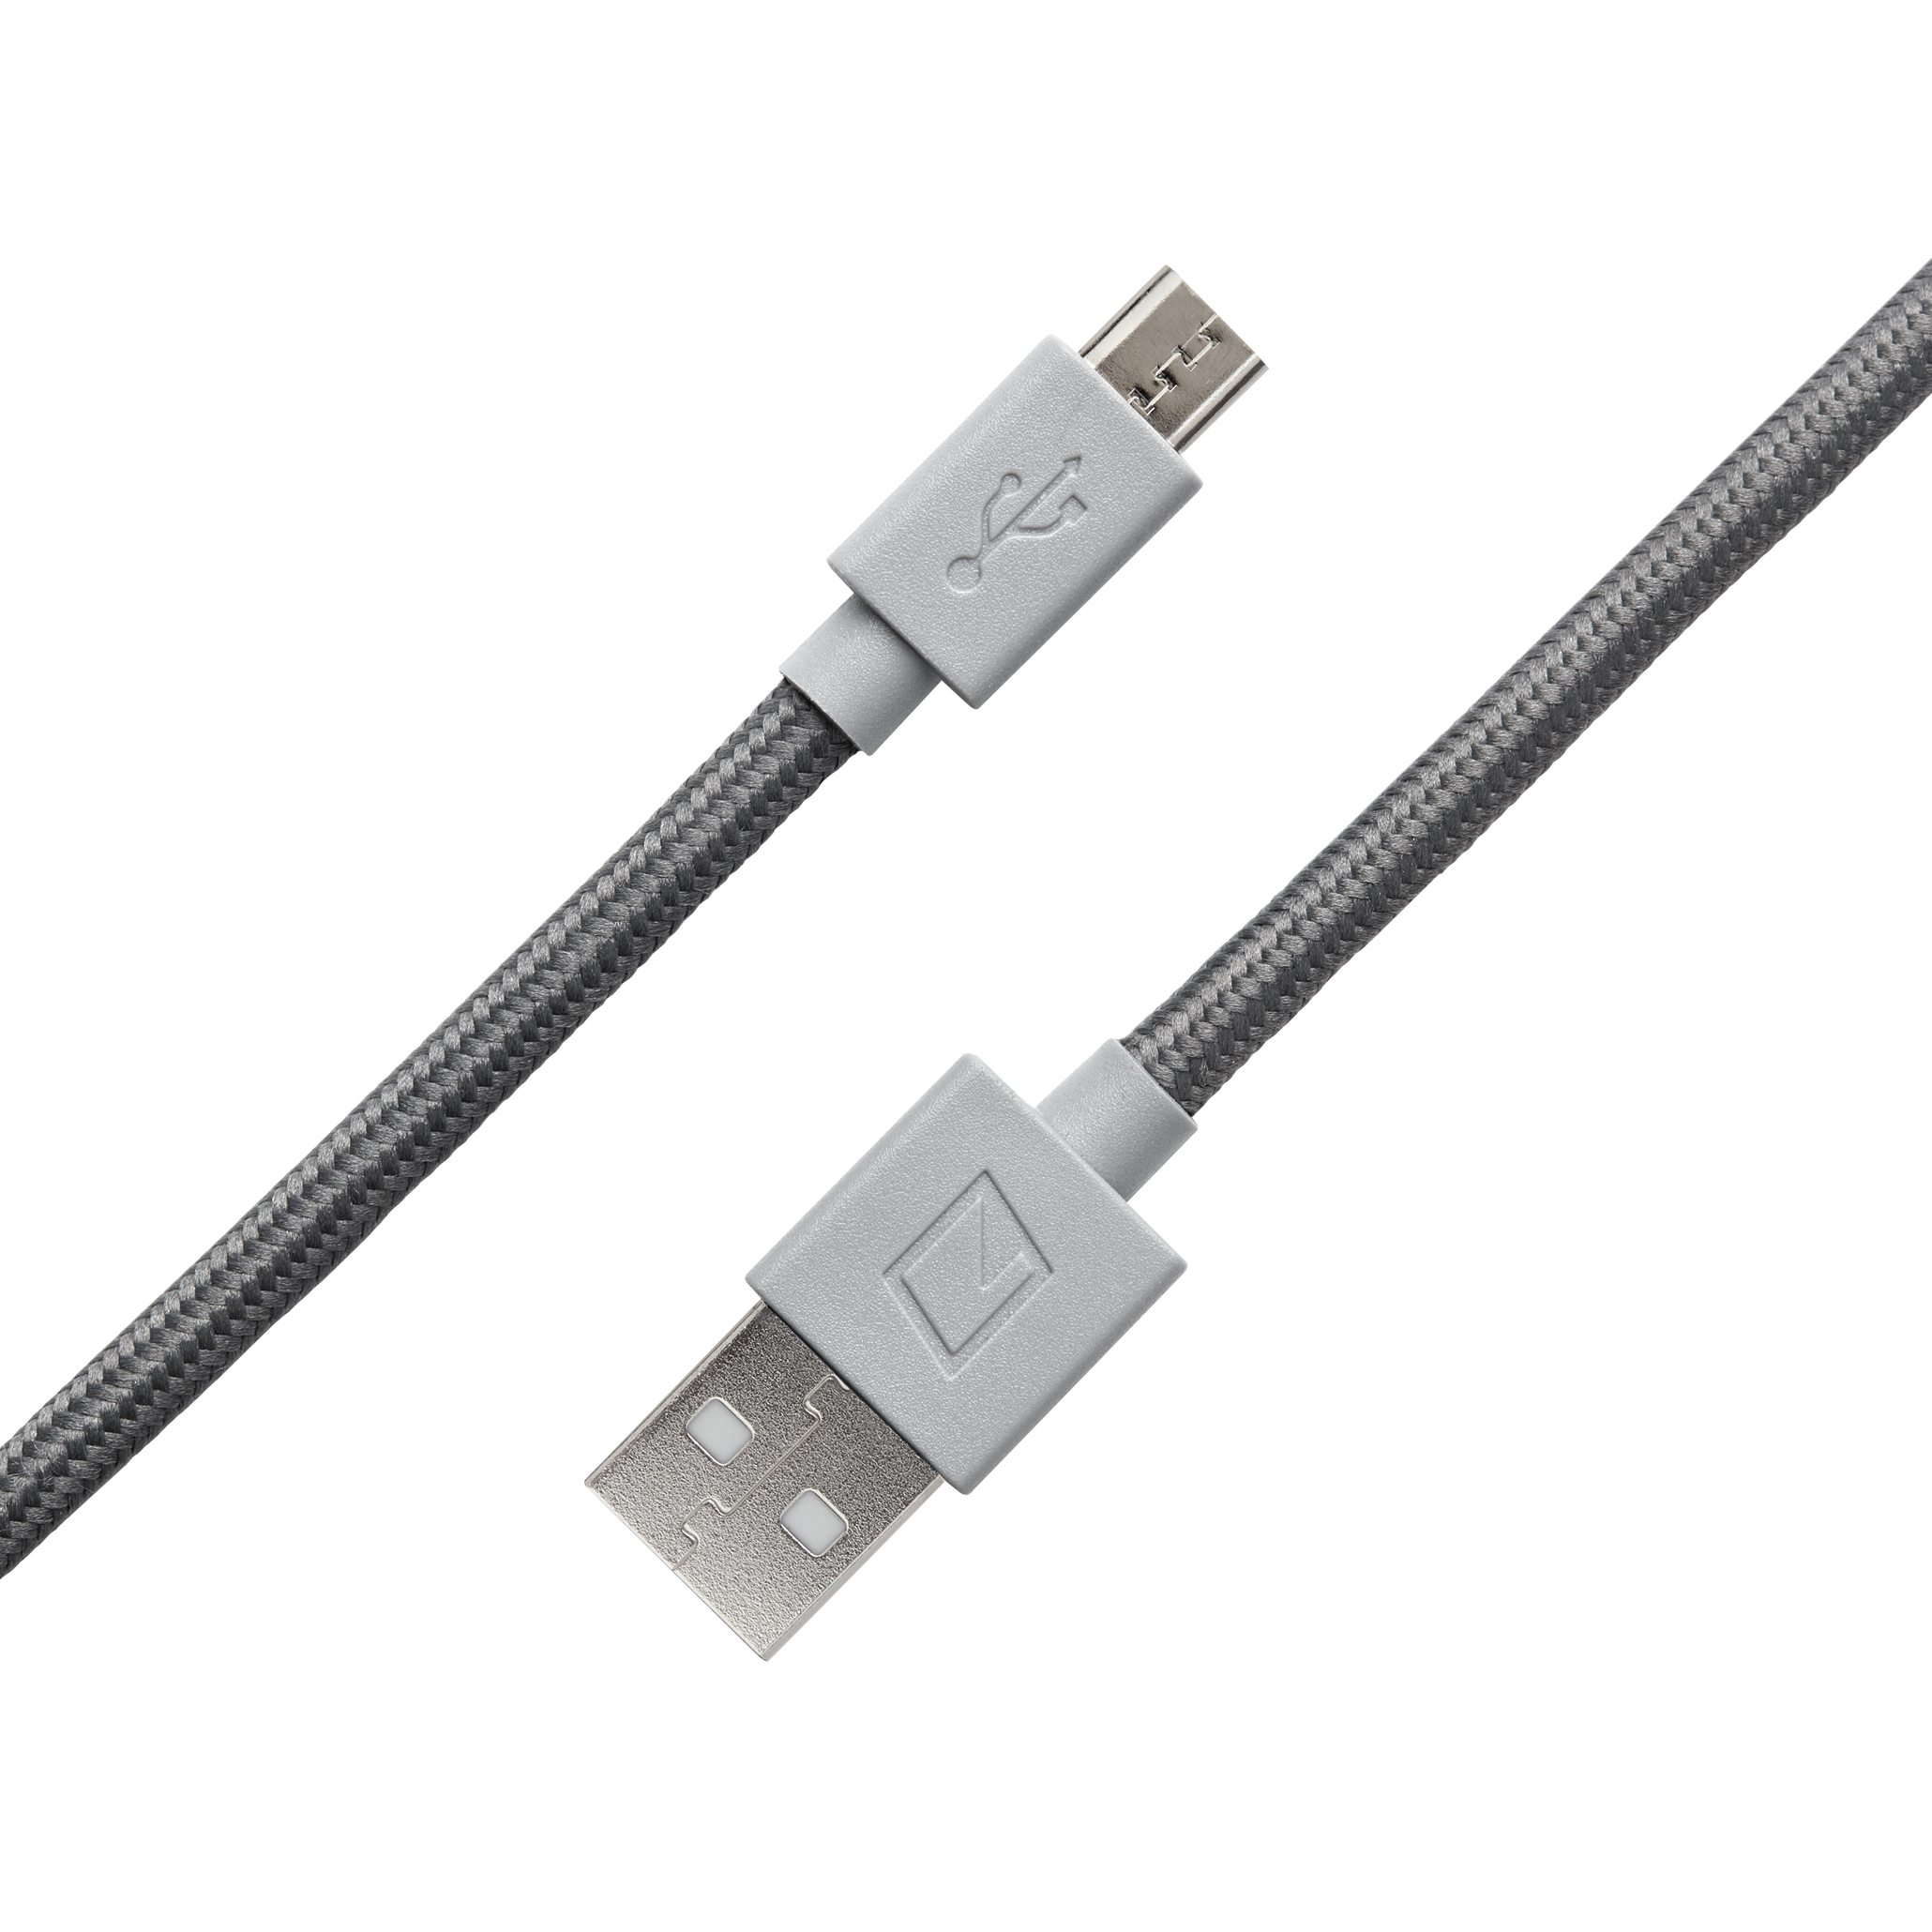 Elektron USB-2 Micro USB Cable